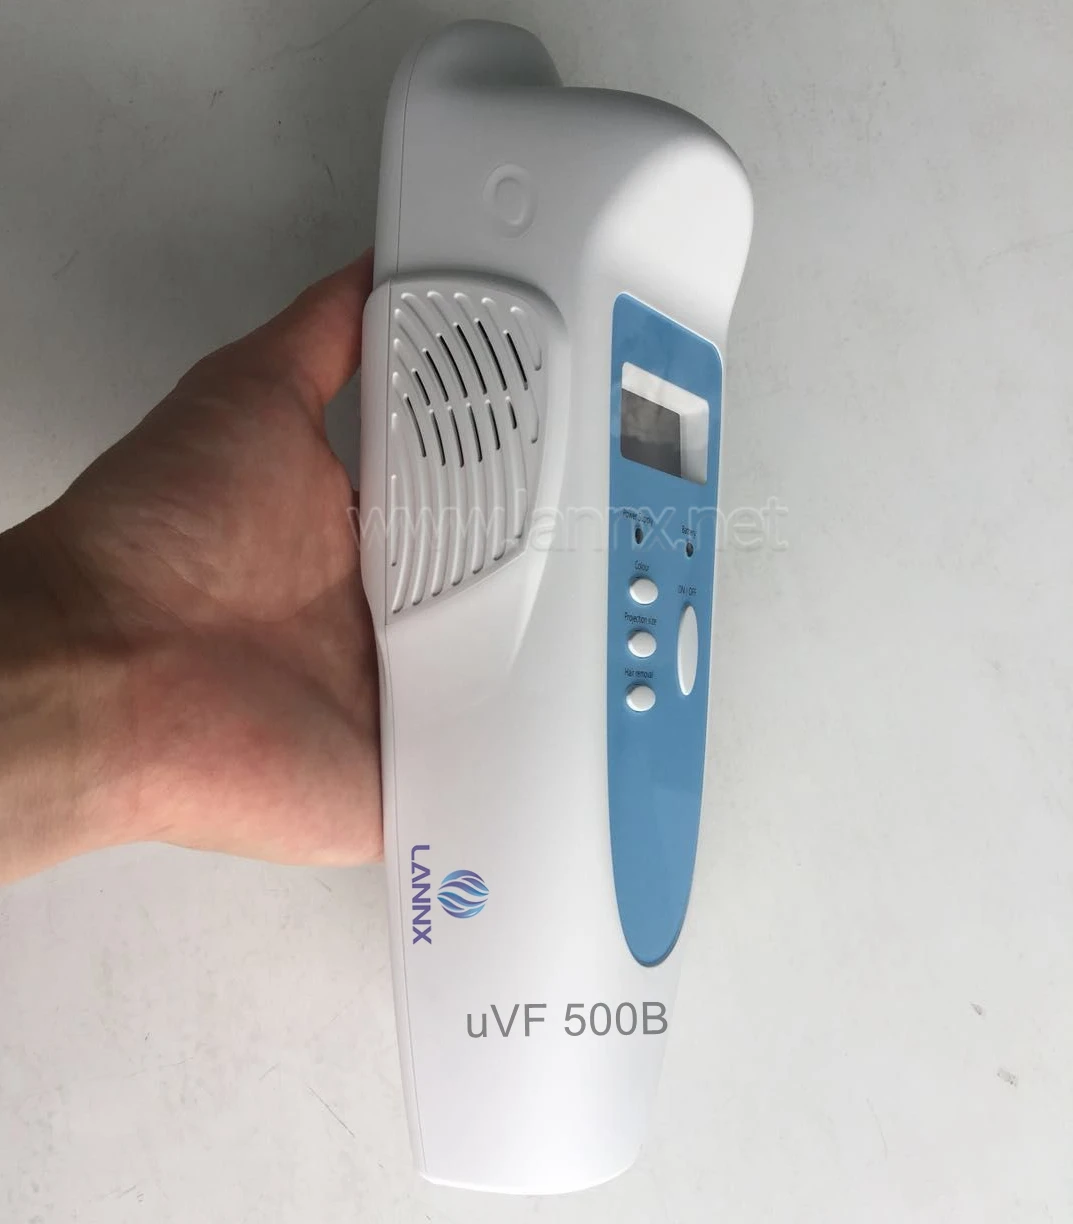 

LANNX Professional Medical Portable Vein Finder Vein Imaging Instruments Vascular uVF 500B viewer portable vein finder